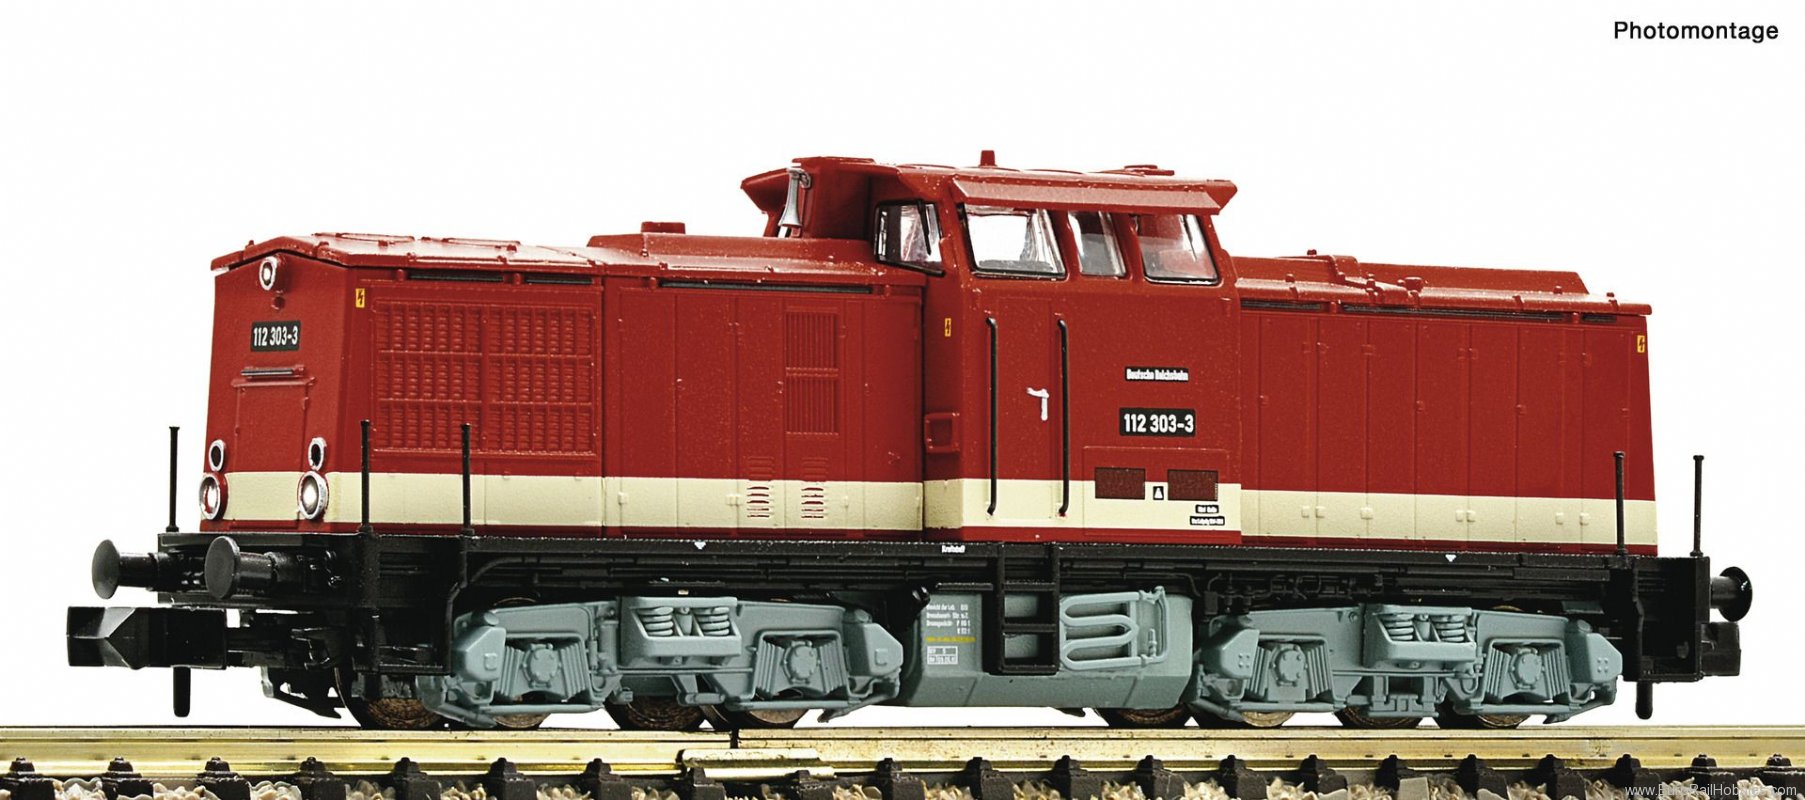 Fleischmann 721086 DR 112 303-3 Diesel locomotive DCC w/Sound